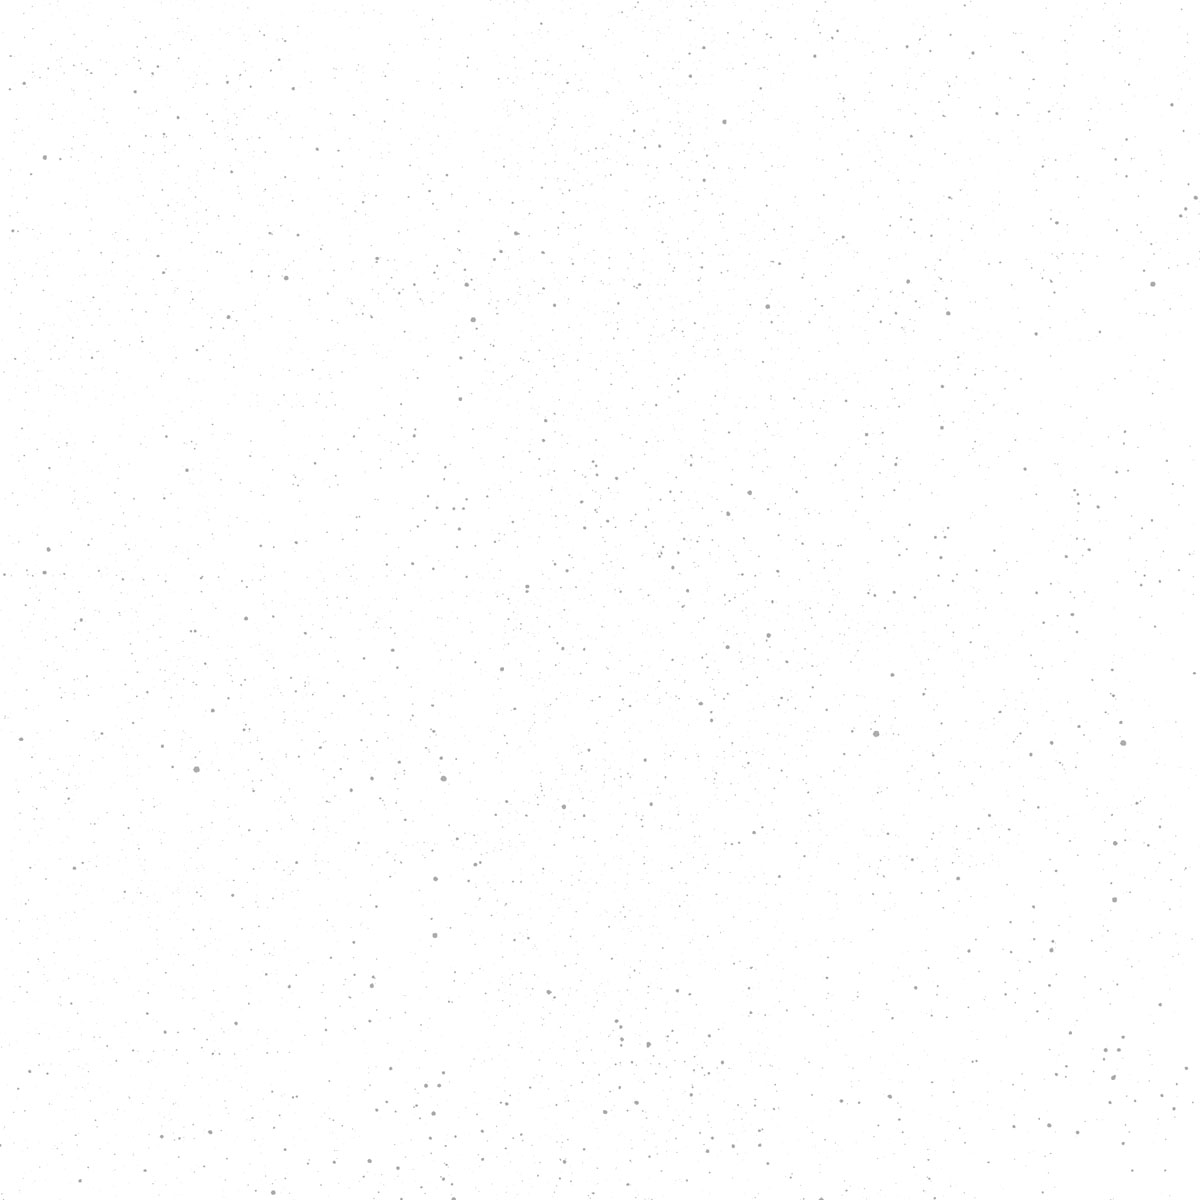 Ubrousek bílý Dunilin® Brilliance 10 ks, 40 x 40 cm 